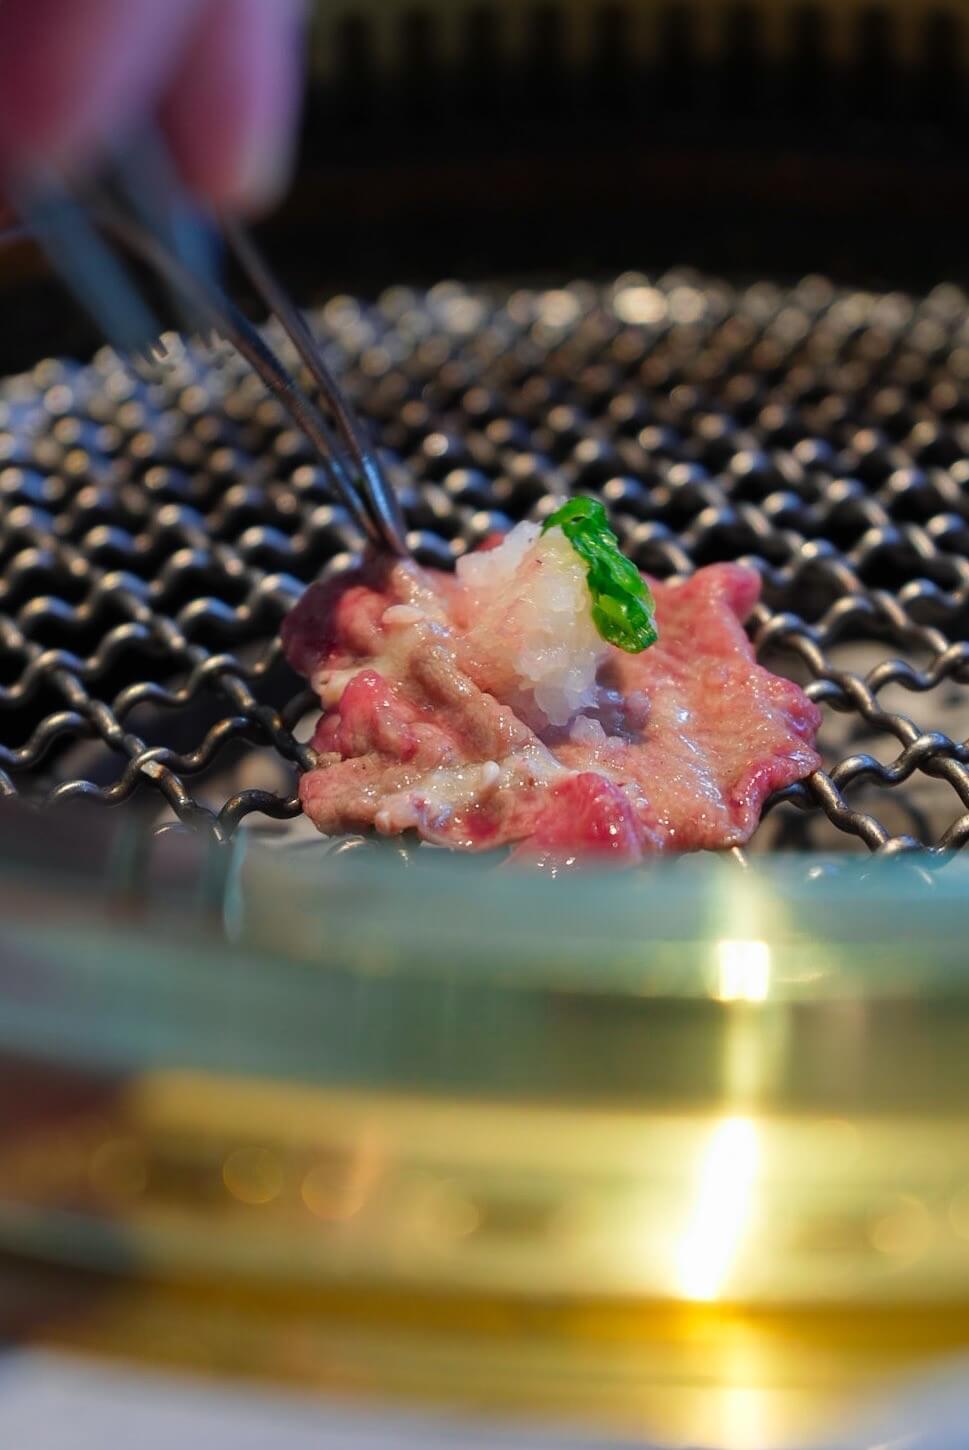 台中人氣燒肉【三山燒肉】輕井澤集團的最新力作質感清水模建築